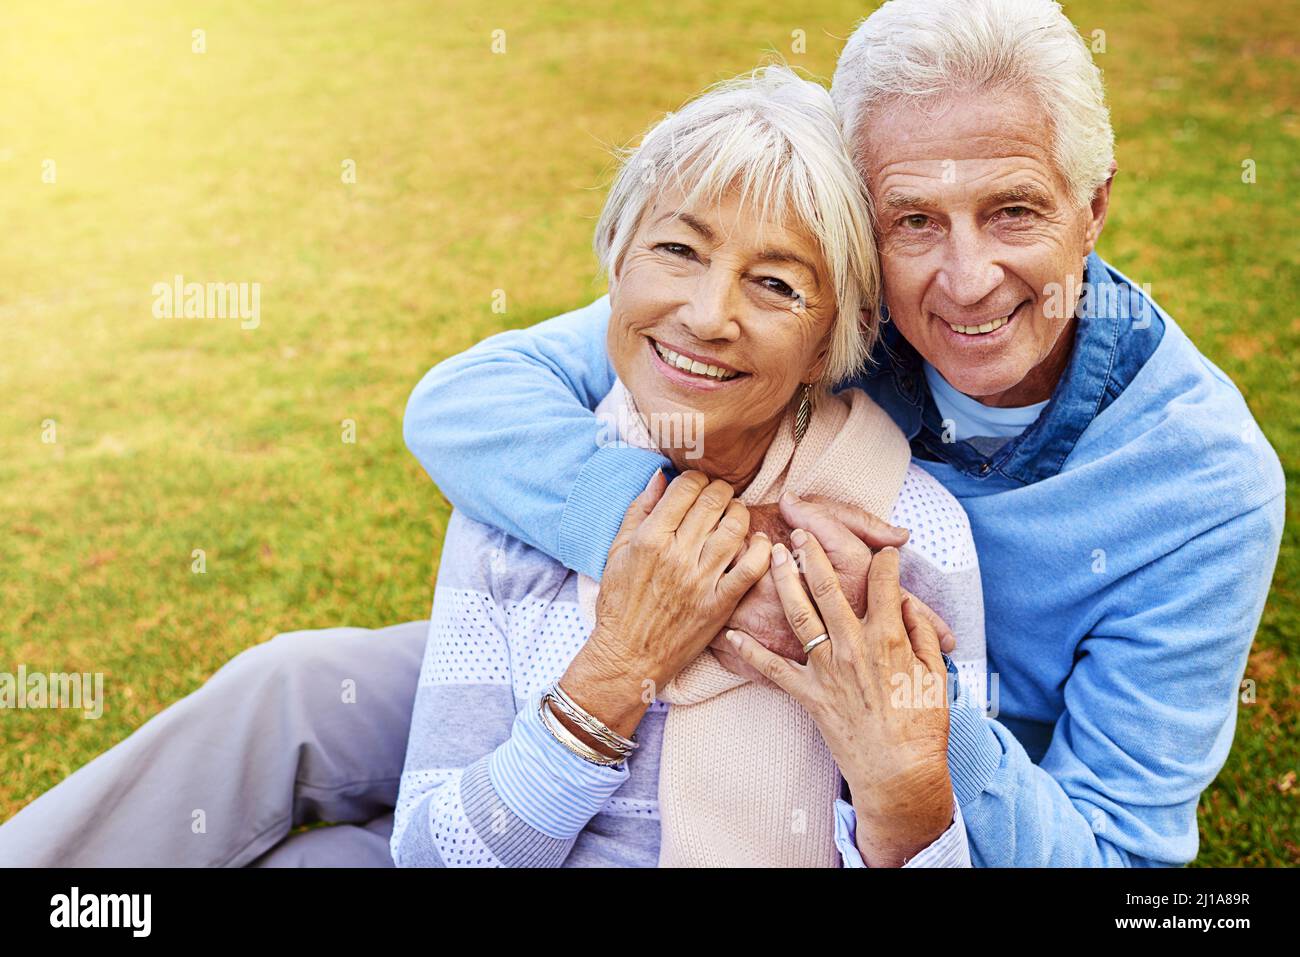 Sie sind ein liebevolles Paar. Porträt eines älteren Paares, das den Tag gemeinsam in einem Park genießt. Stockfoto